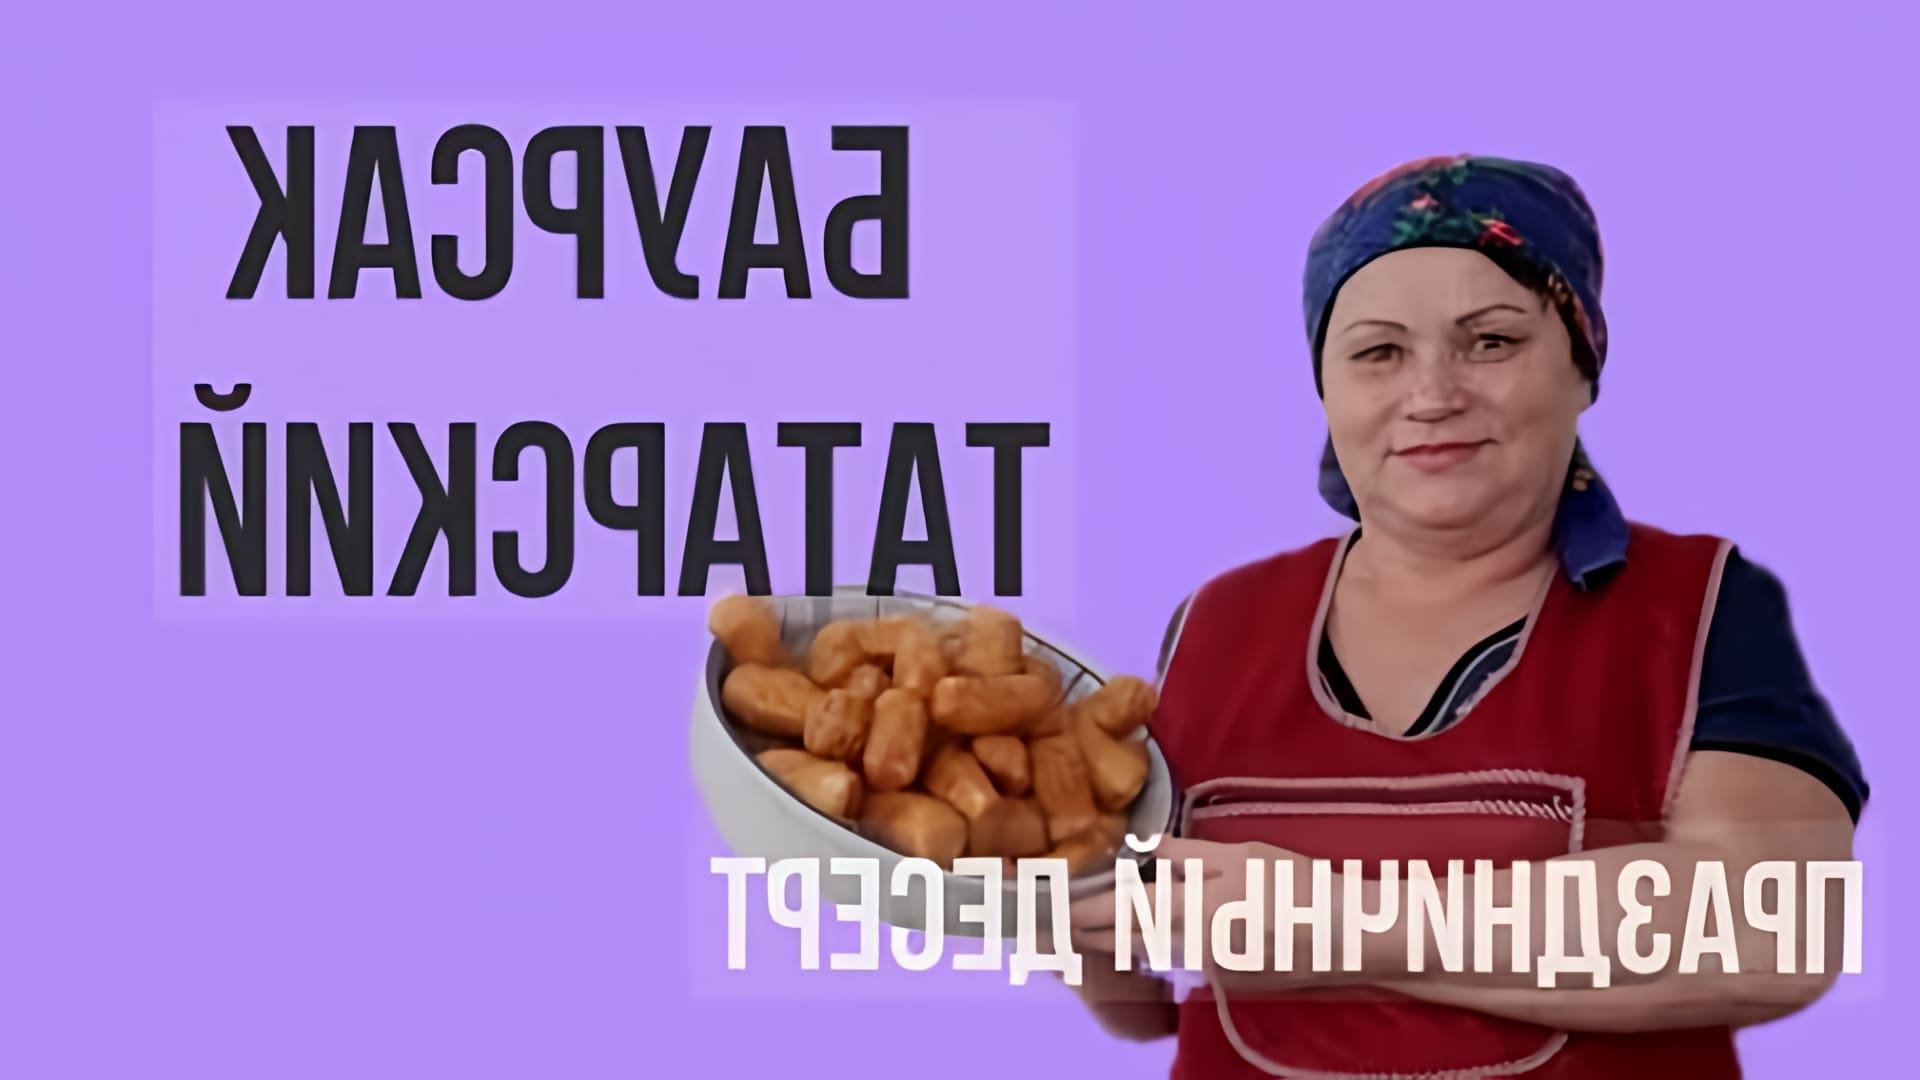 В этом видео демонстрируется процесс приготовления татарского национального блюда - баурсака